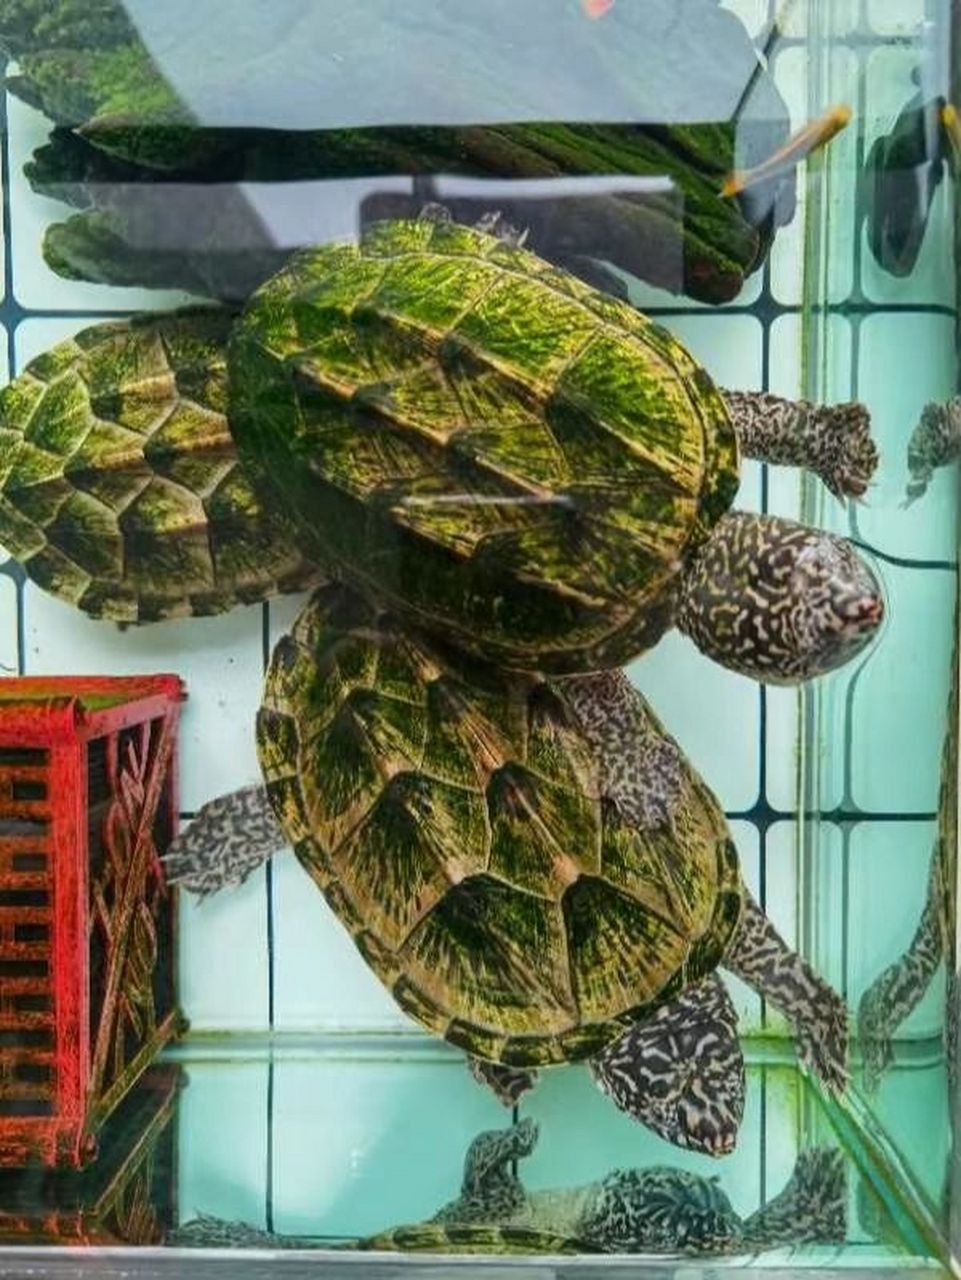 墨西哥蛋龟简介 墨西哥蛋龟,学名:staurotypus triporcatus ,动胸龟科